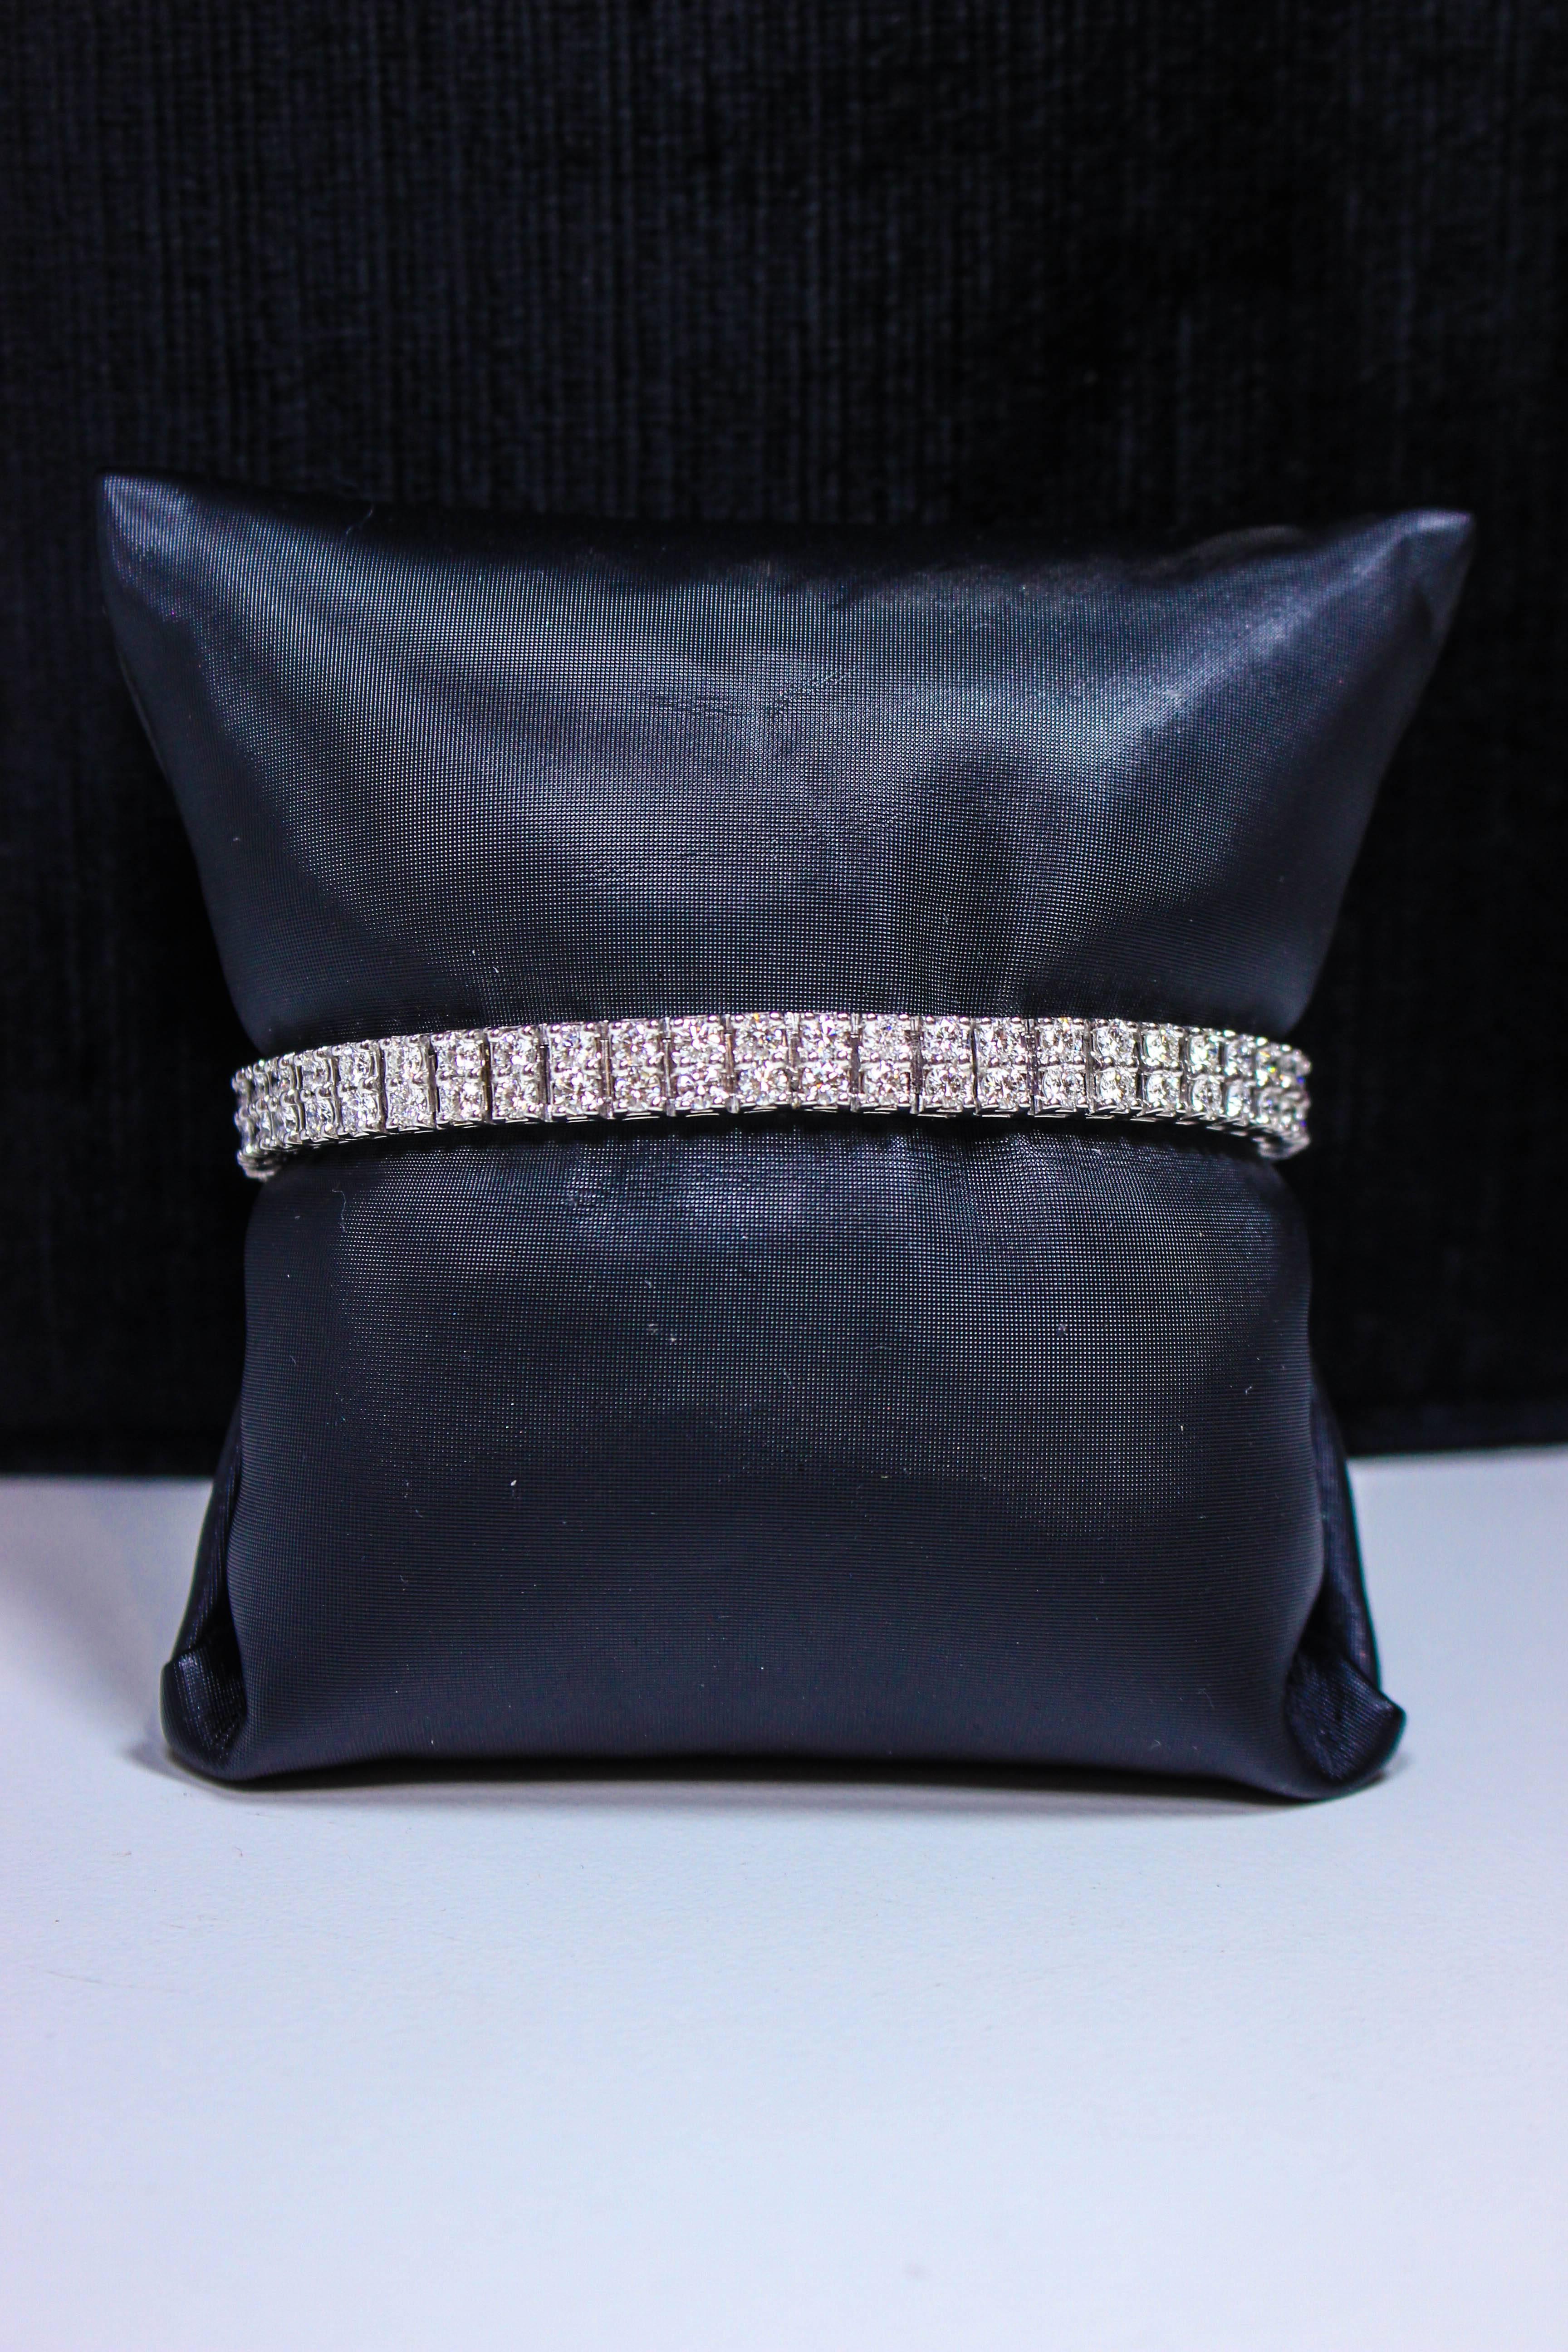 Ce bracelet est composé d'or blanc de 14kt, présente un beau style à double couche avec des diamants de taille ronde et un poids total approximatif de 7,84 carats. Un merveilleux style classique. En parfait état.

N'hésitez pas à poser toutes vos